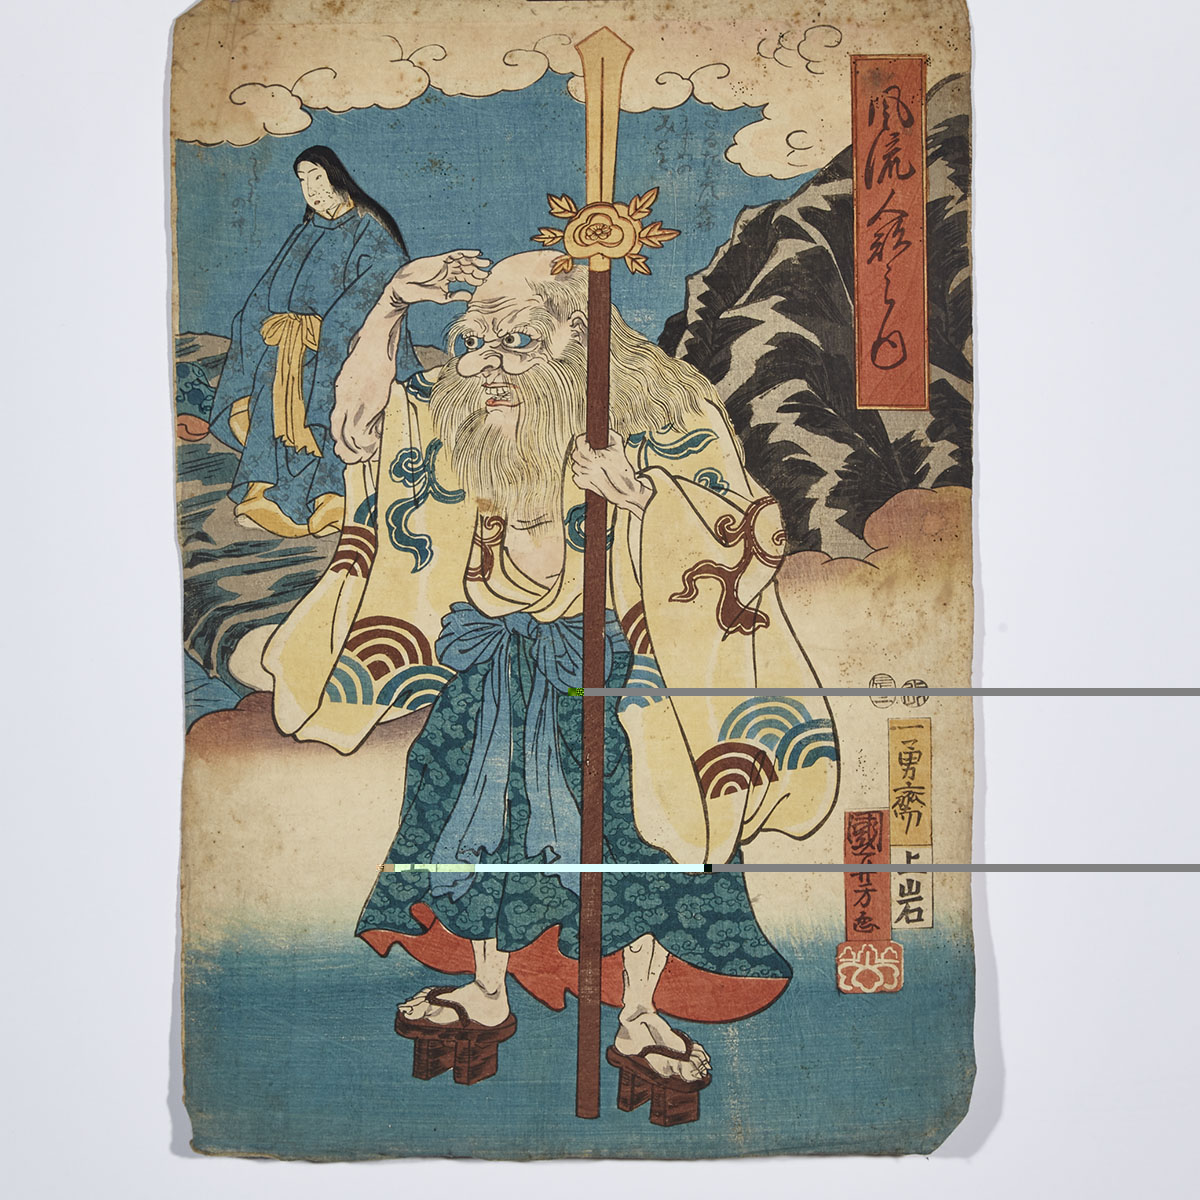 Utagawa Kuniyoshi (1798-1861) and Utagawa Yoshiiku (1833-1904)